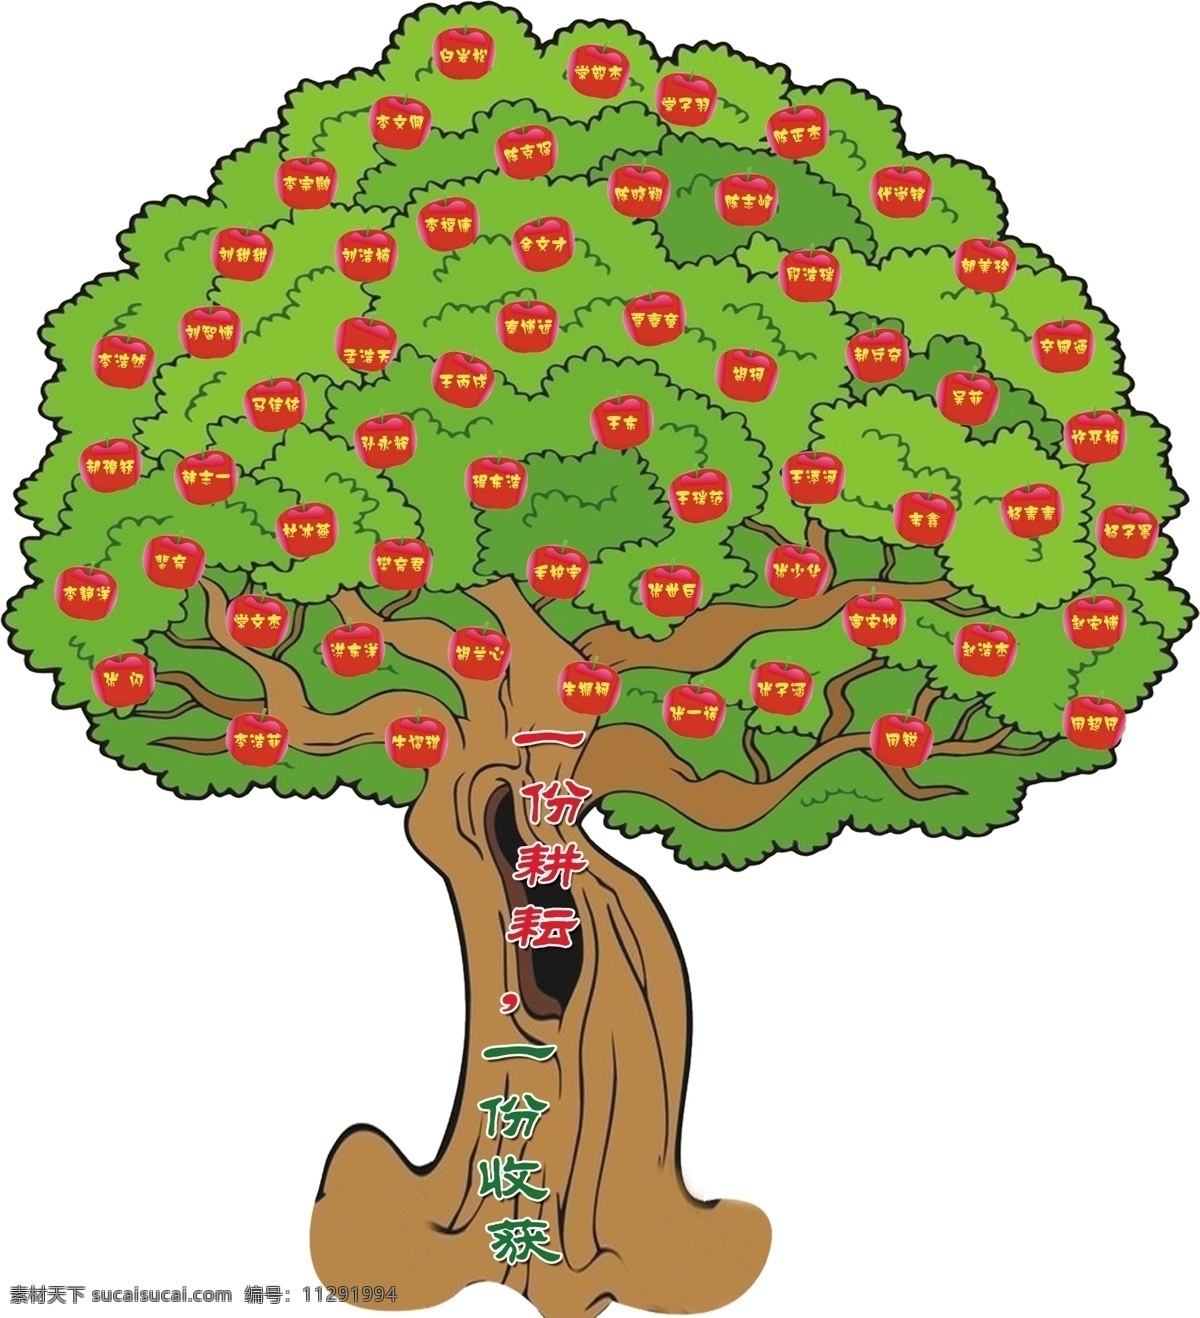 苹果树 卡通苹果树 绿色苹果树 红苹果 其他模版 广告设计模板 源文件